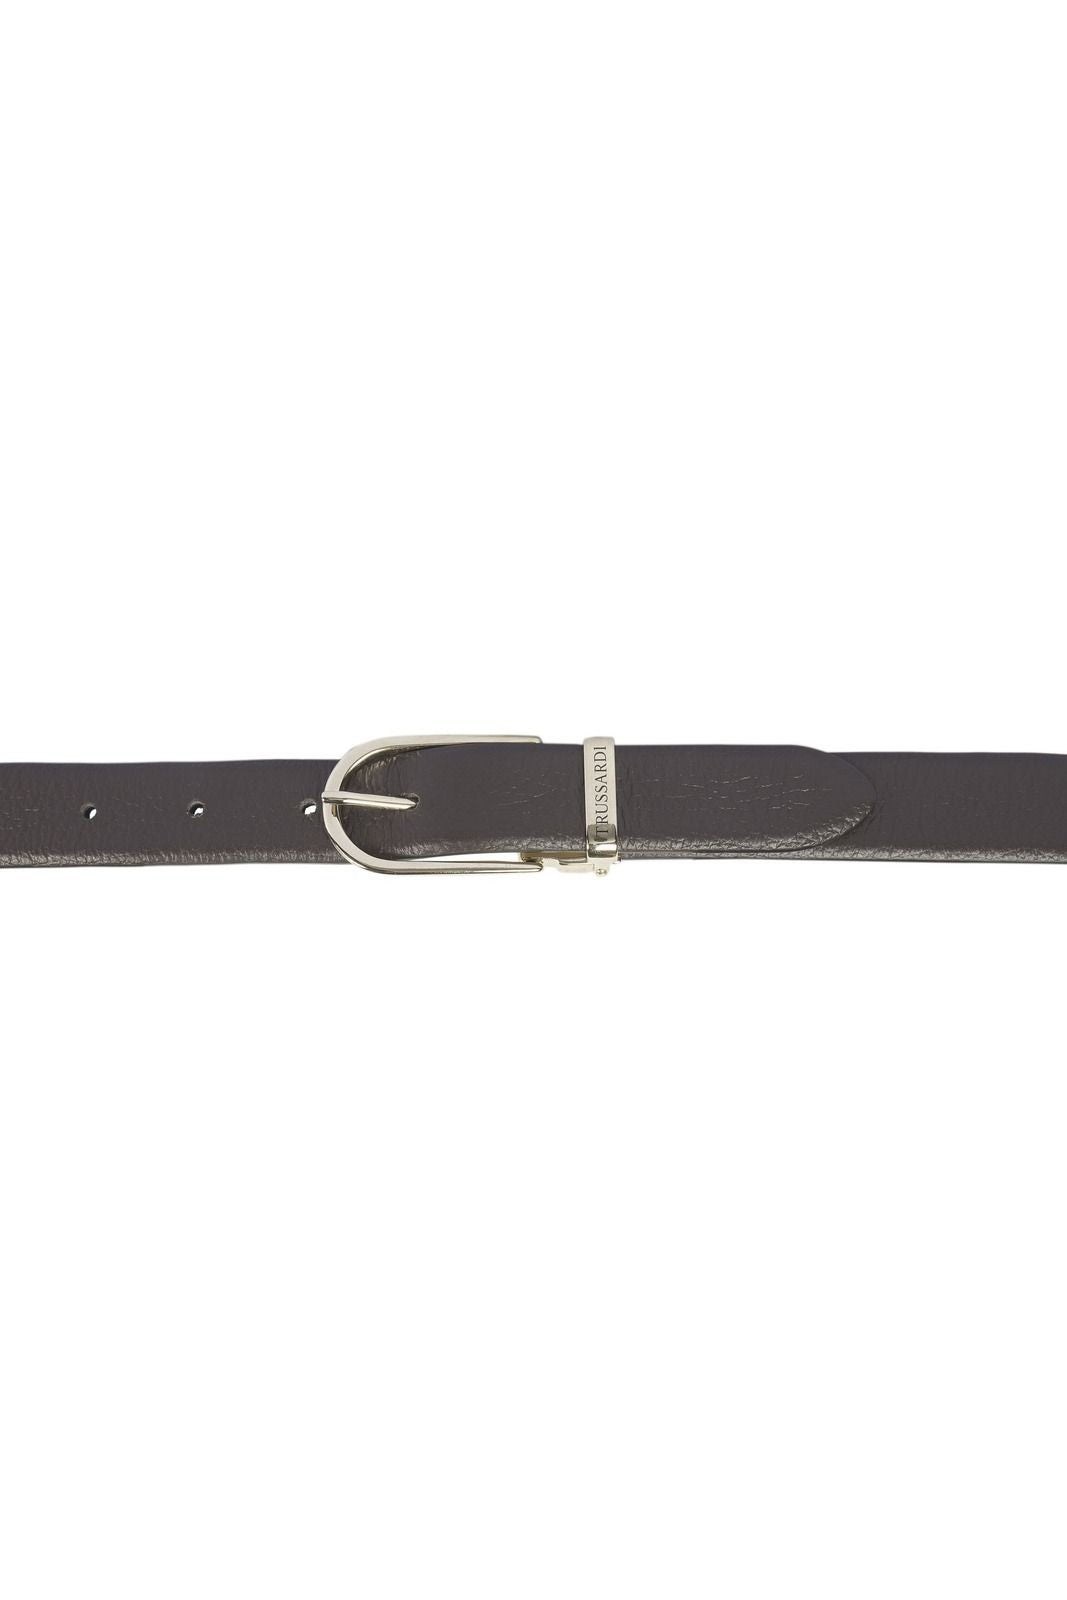 Trussardi Belts For Women 76C990